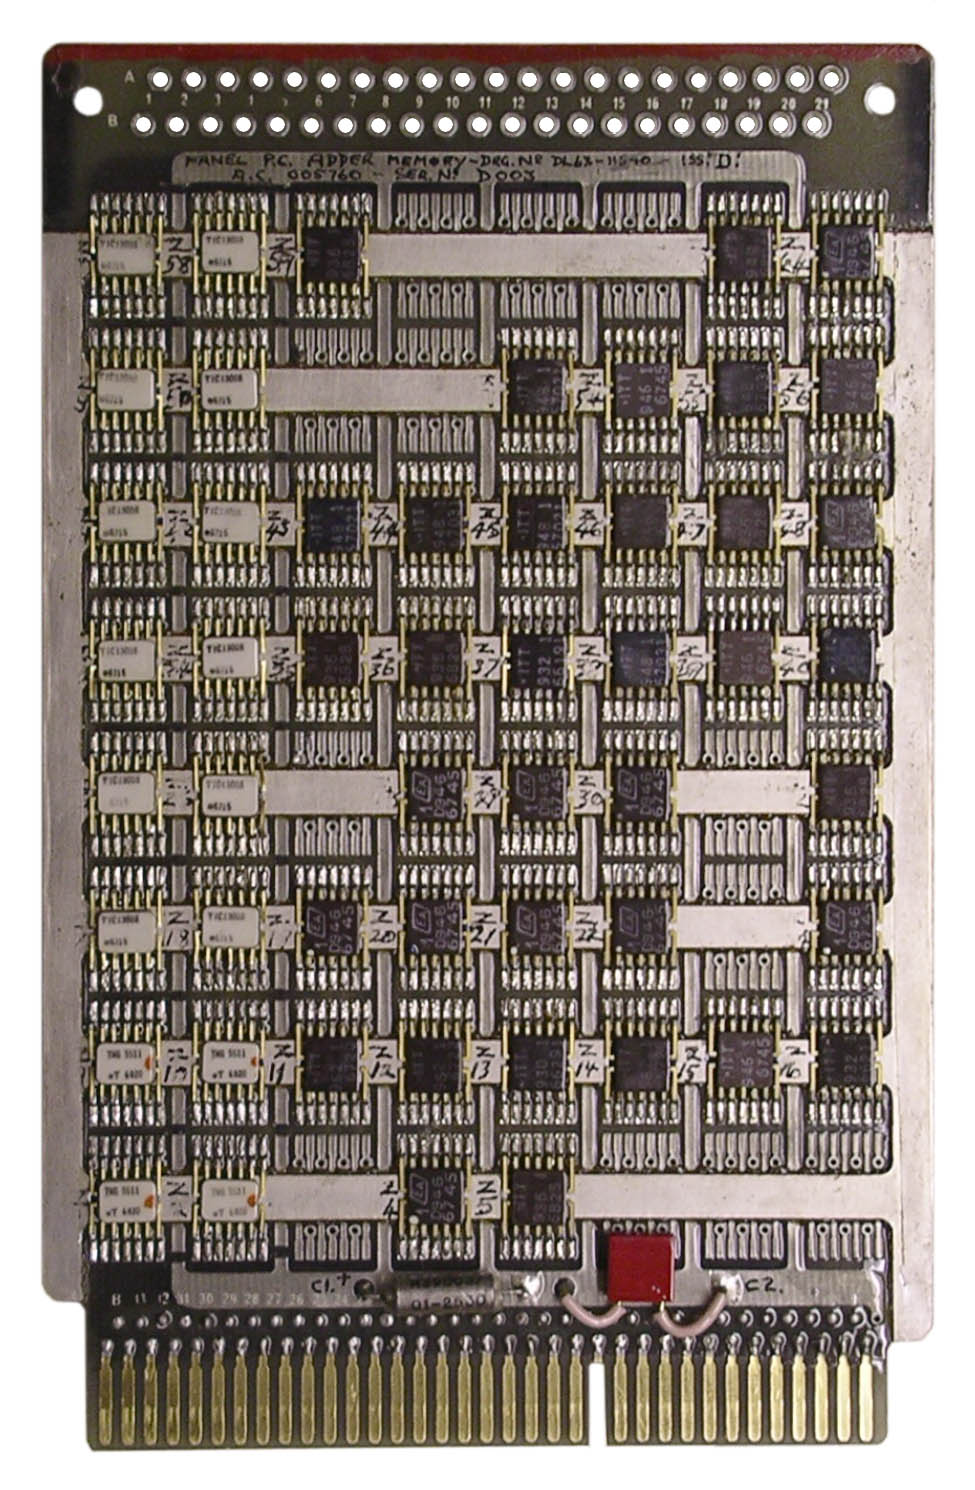 Adder Memory Circuit Board